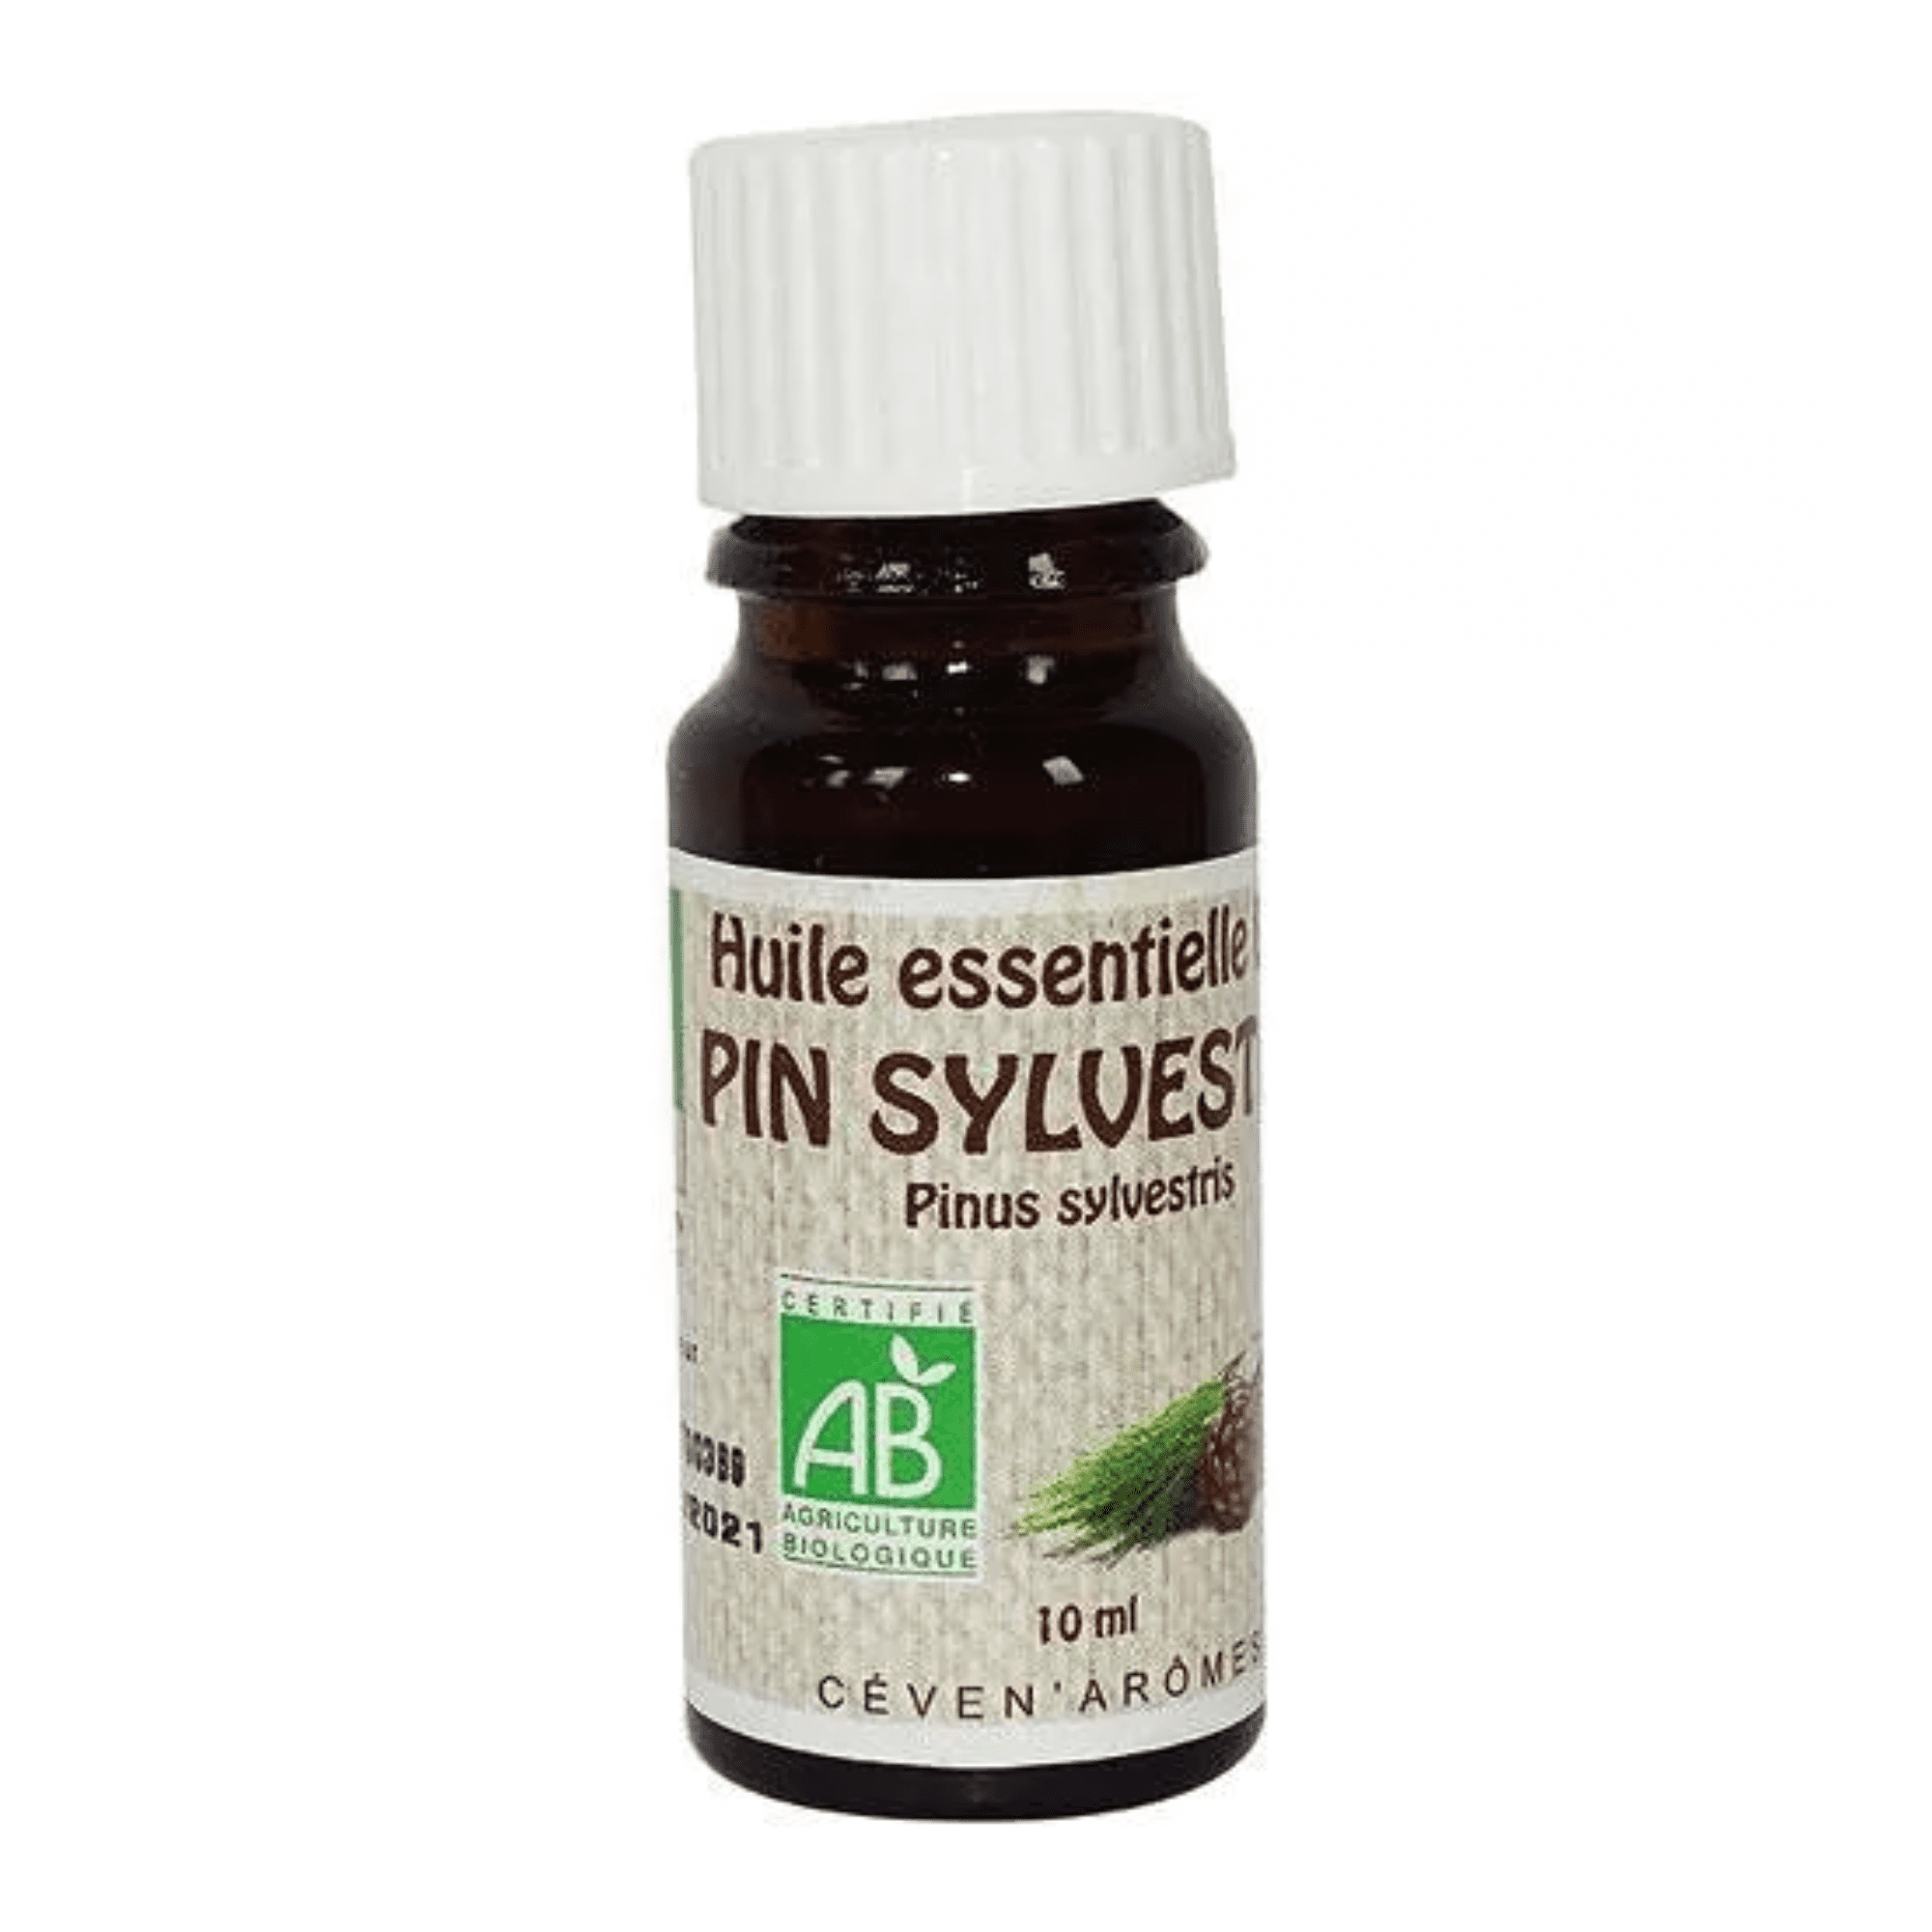 huile essentielle pin sylestre bio - ceven aromes